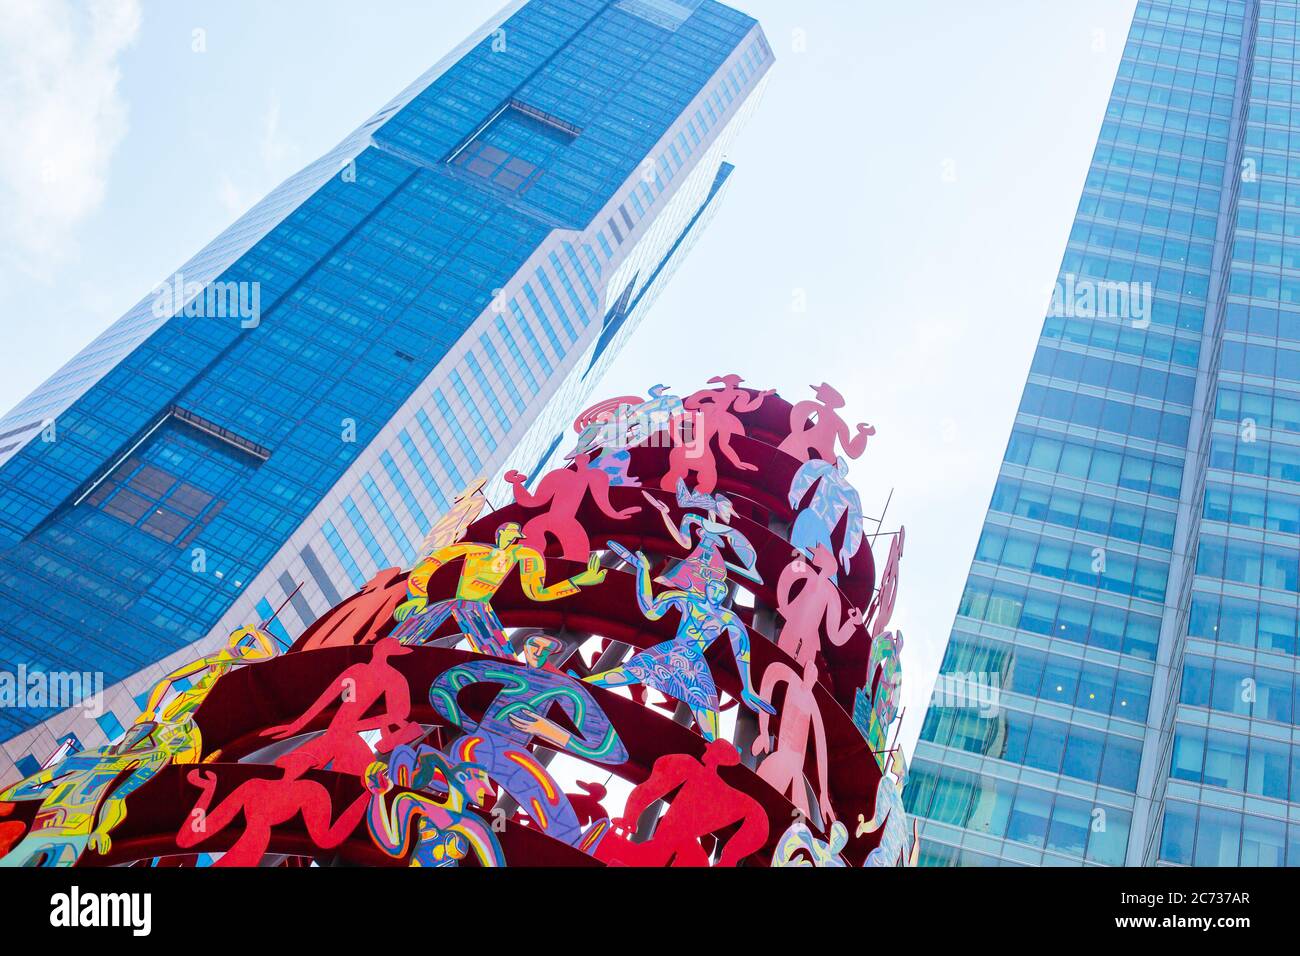 Singapore Momentum Sculpture in Asia Stock Photo